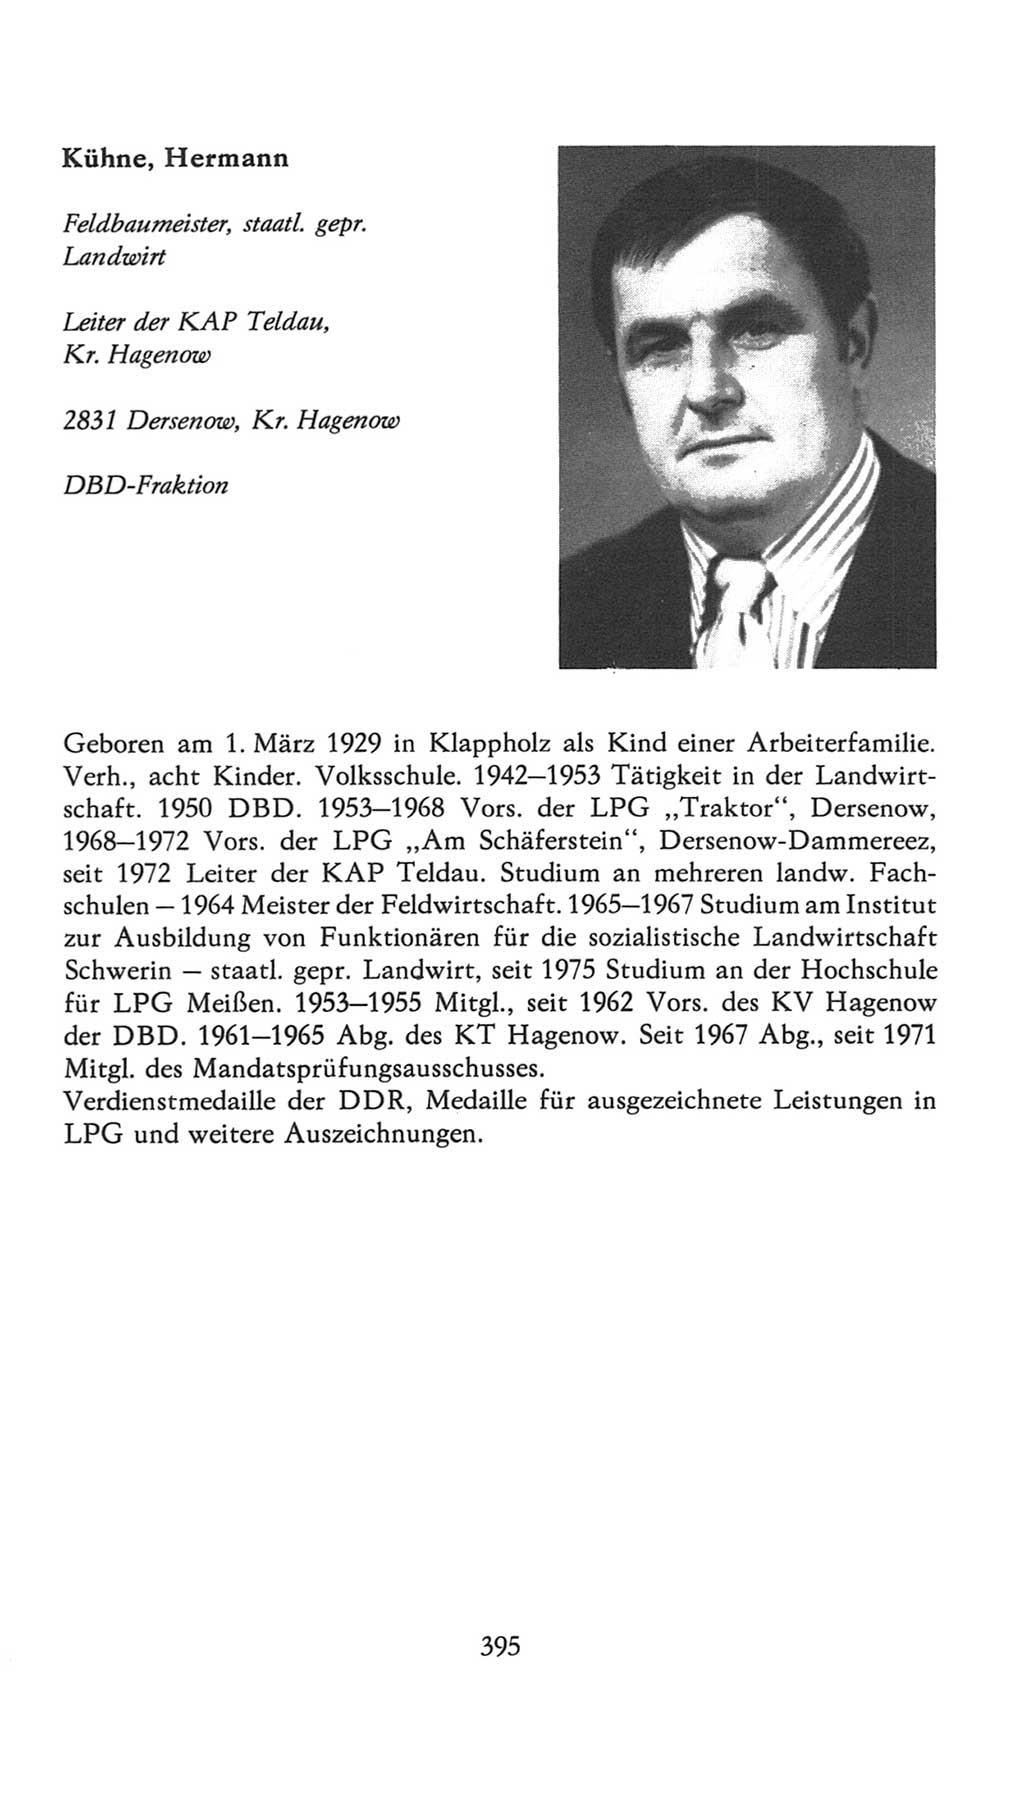 Volkskammer (VK) der Deutschen Demokratischen Republik (DDR), 7. Wahlperiode 1976-1981, Seite 395 (VK. DDR 7. WP. 1976-1981, S. 395)